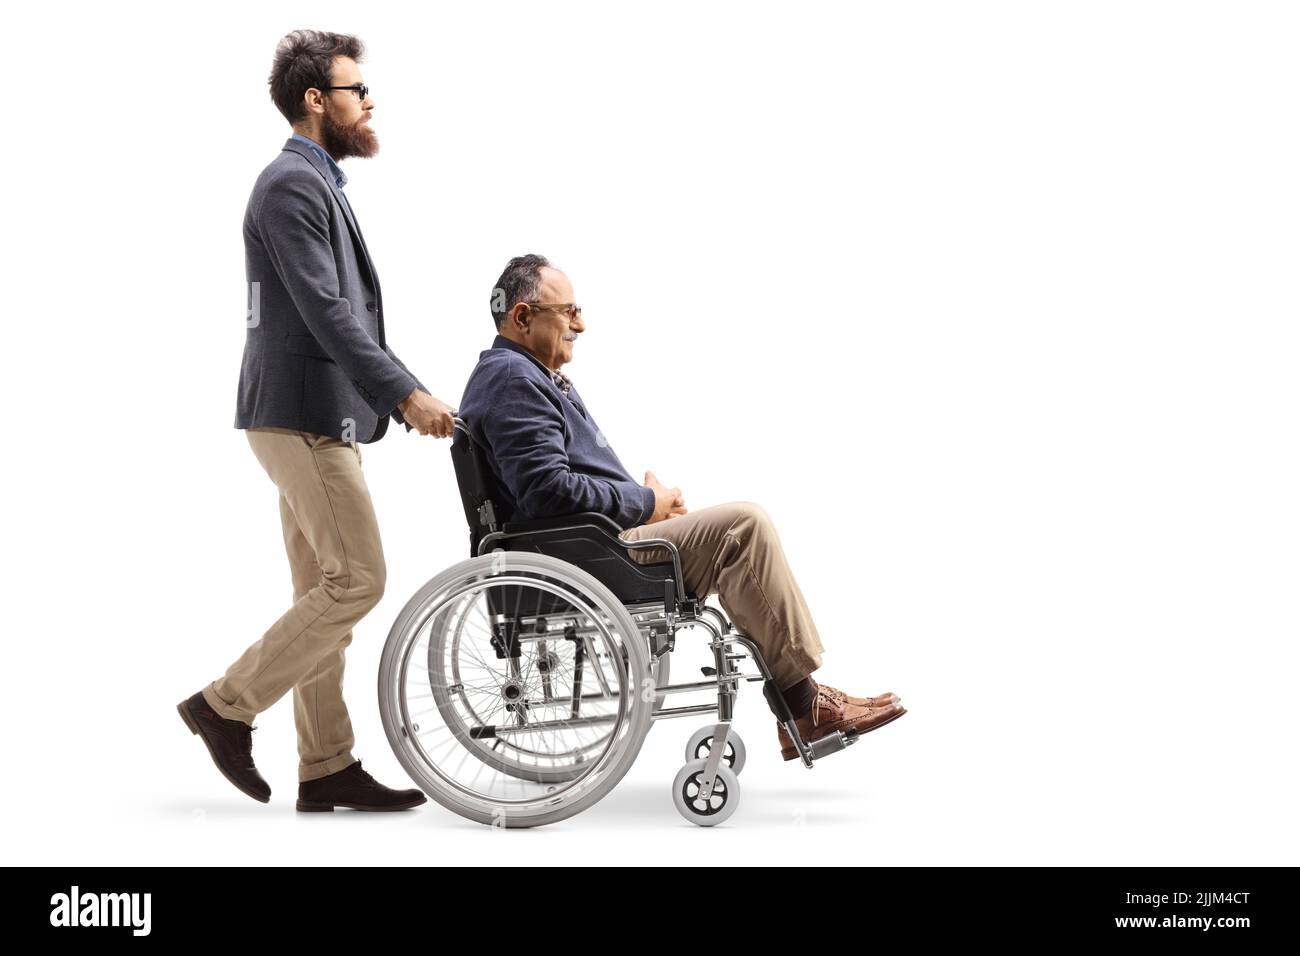 Vue en profil d'un homme marchant et poussant un homme plus âgé dans un fauteuil roulant isolé sur fond blanc Banque D'Images